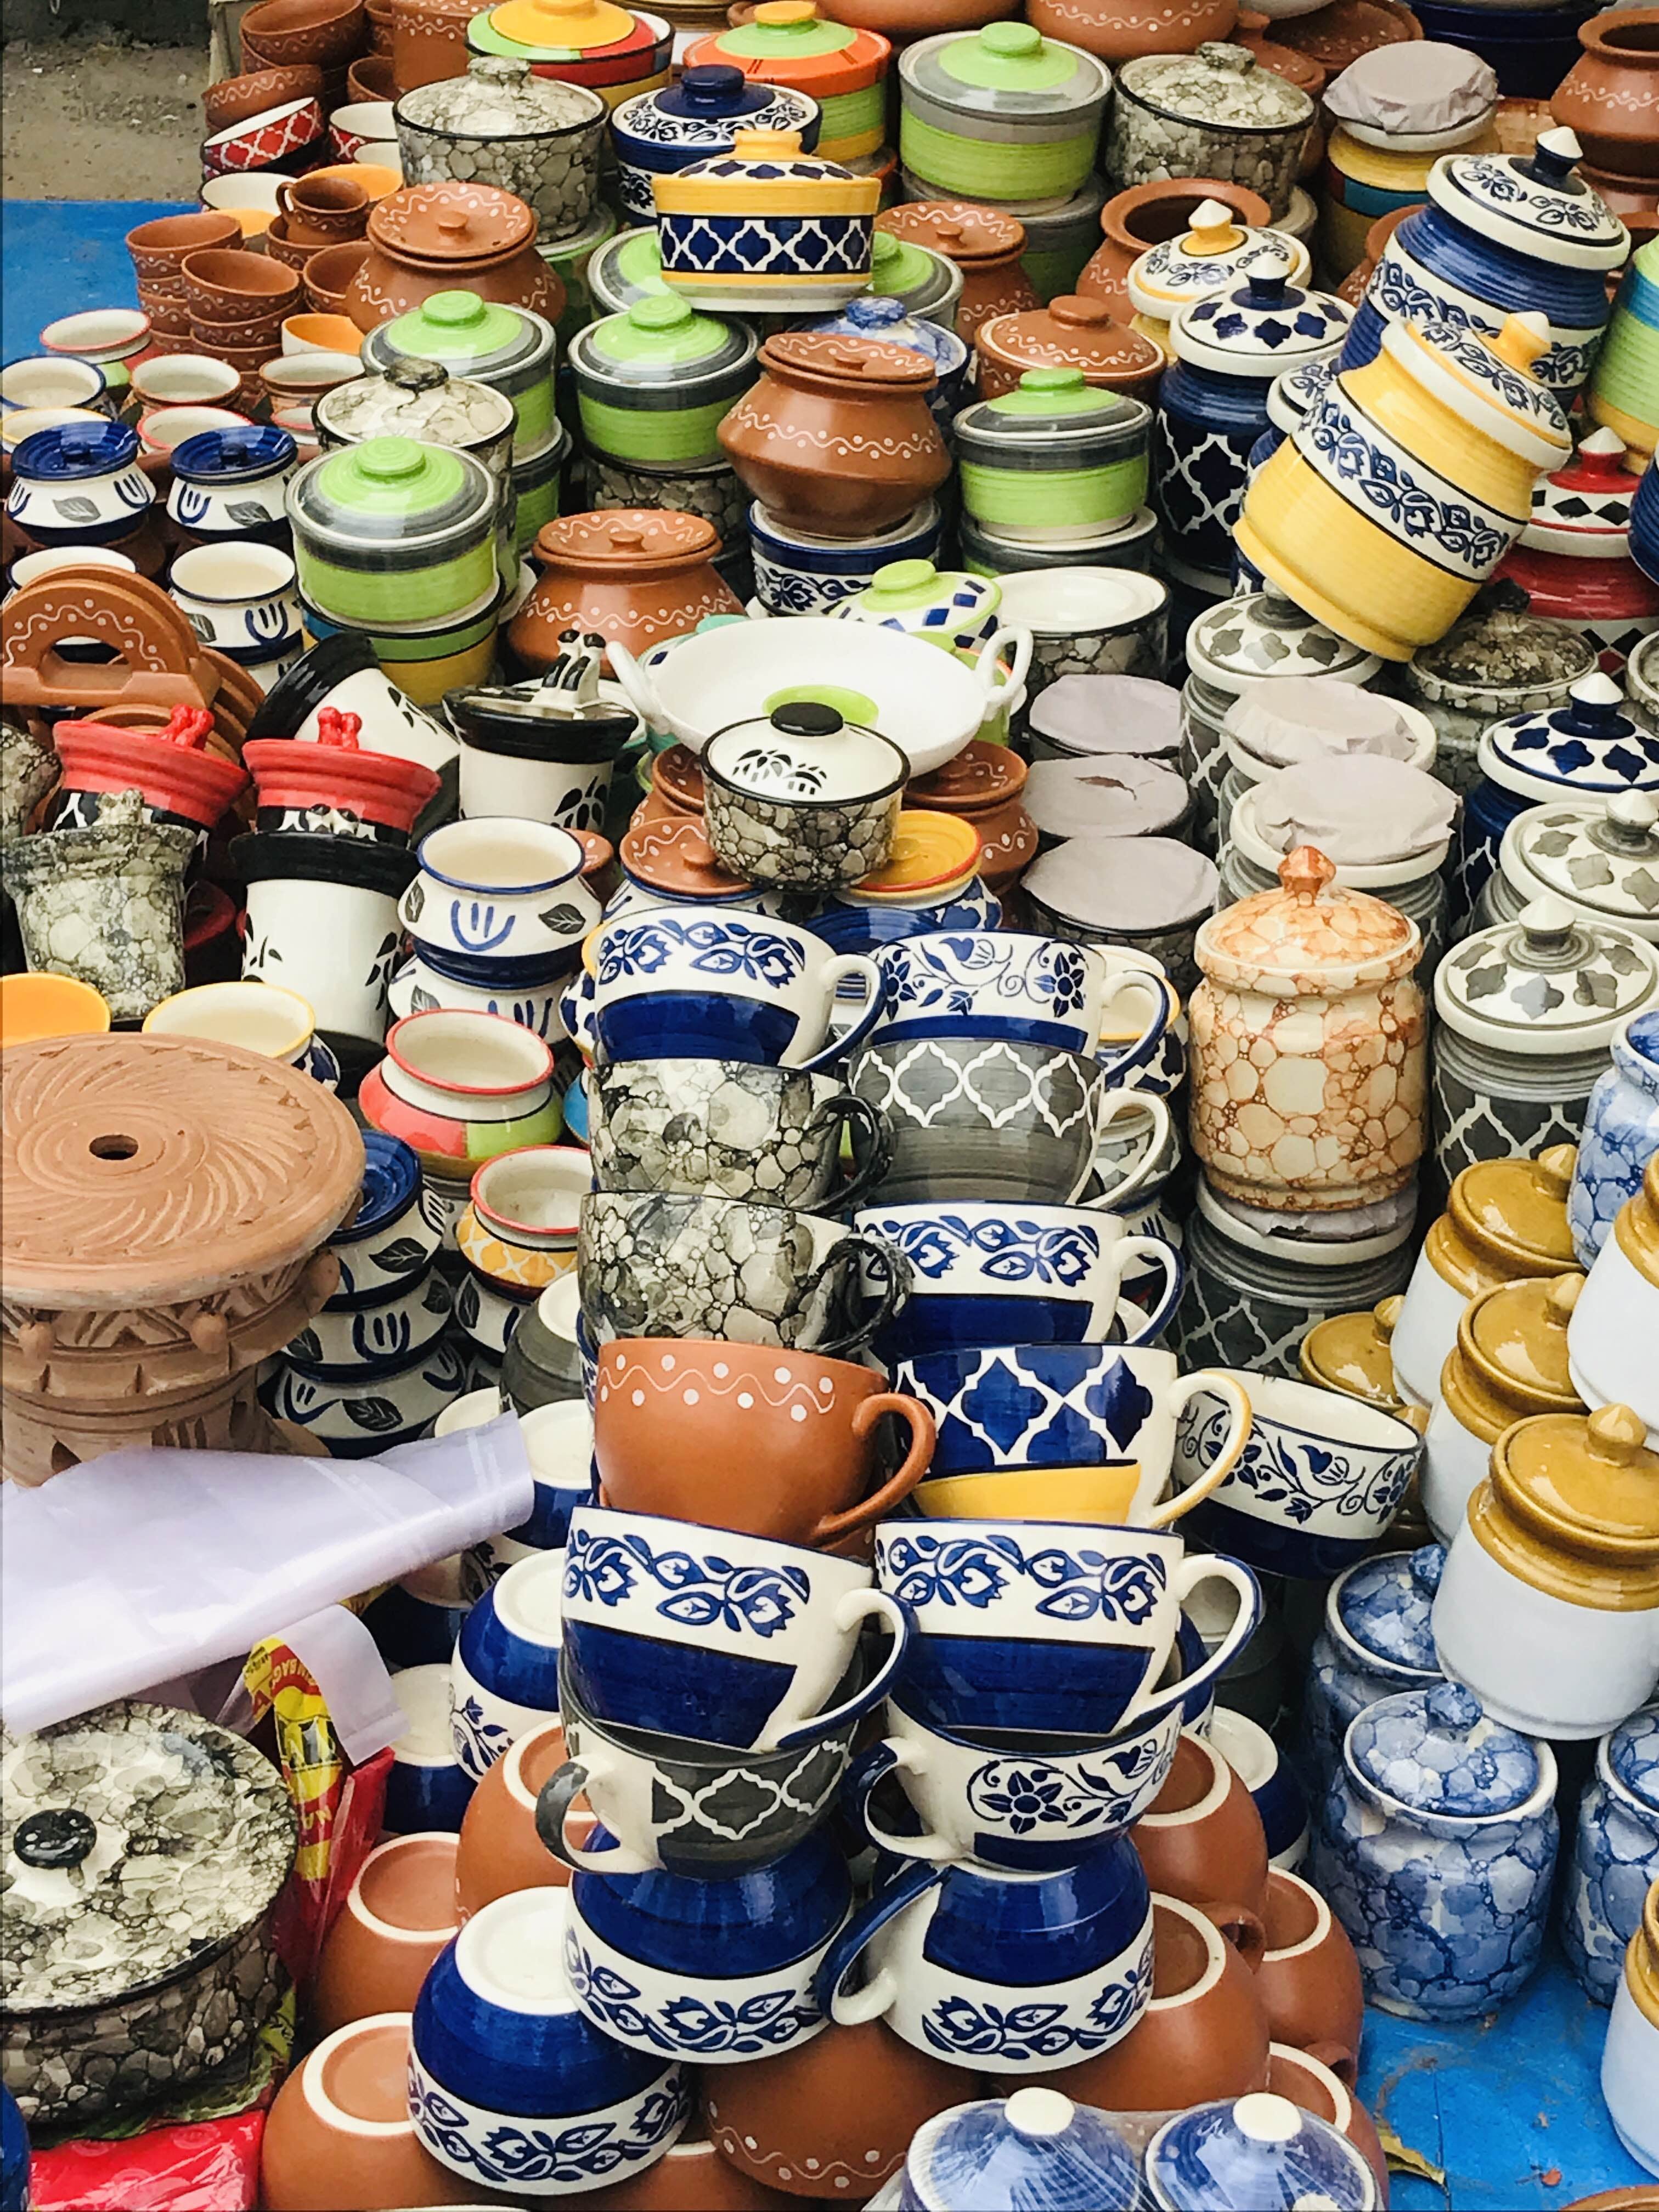 Ceramic,earthenware,Pottery,Porcelain,Souvenir,Tableware,City,Collection,Market,Art